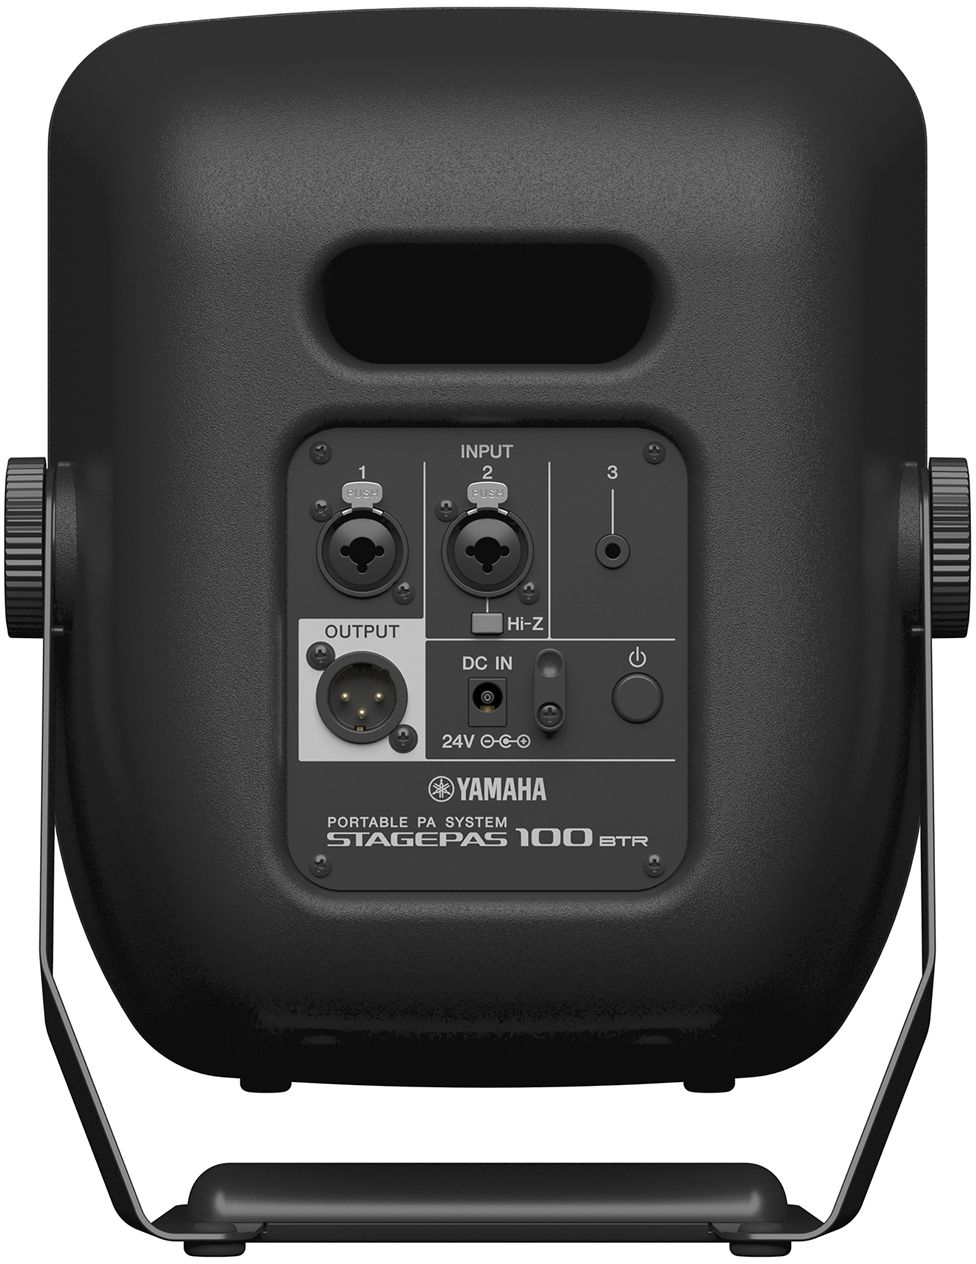 Yamaha Stagepas 100 Btr - Sistema de sonorización portátil - Variation 2